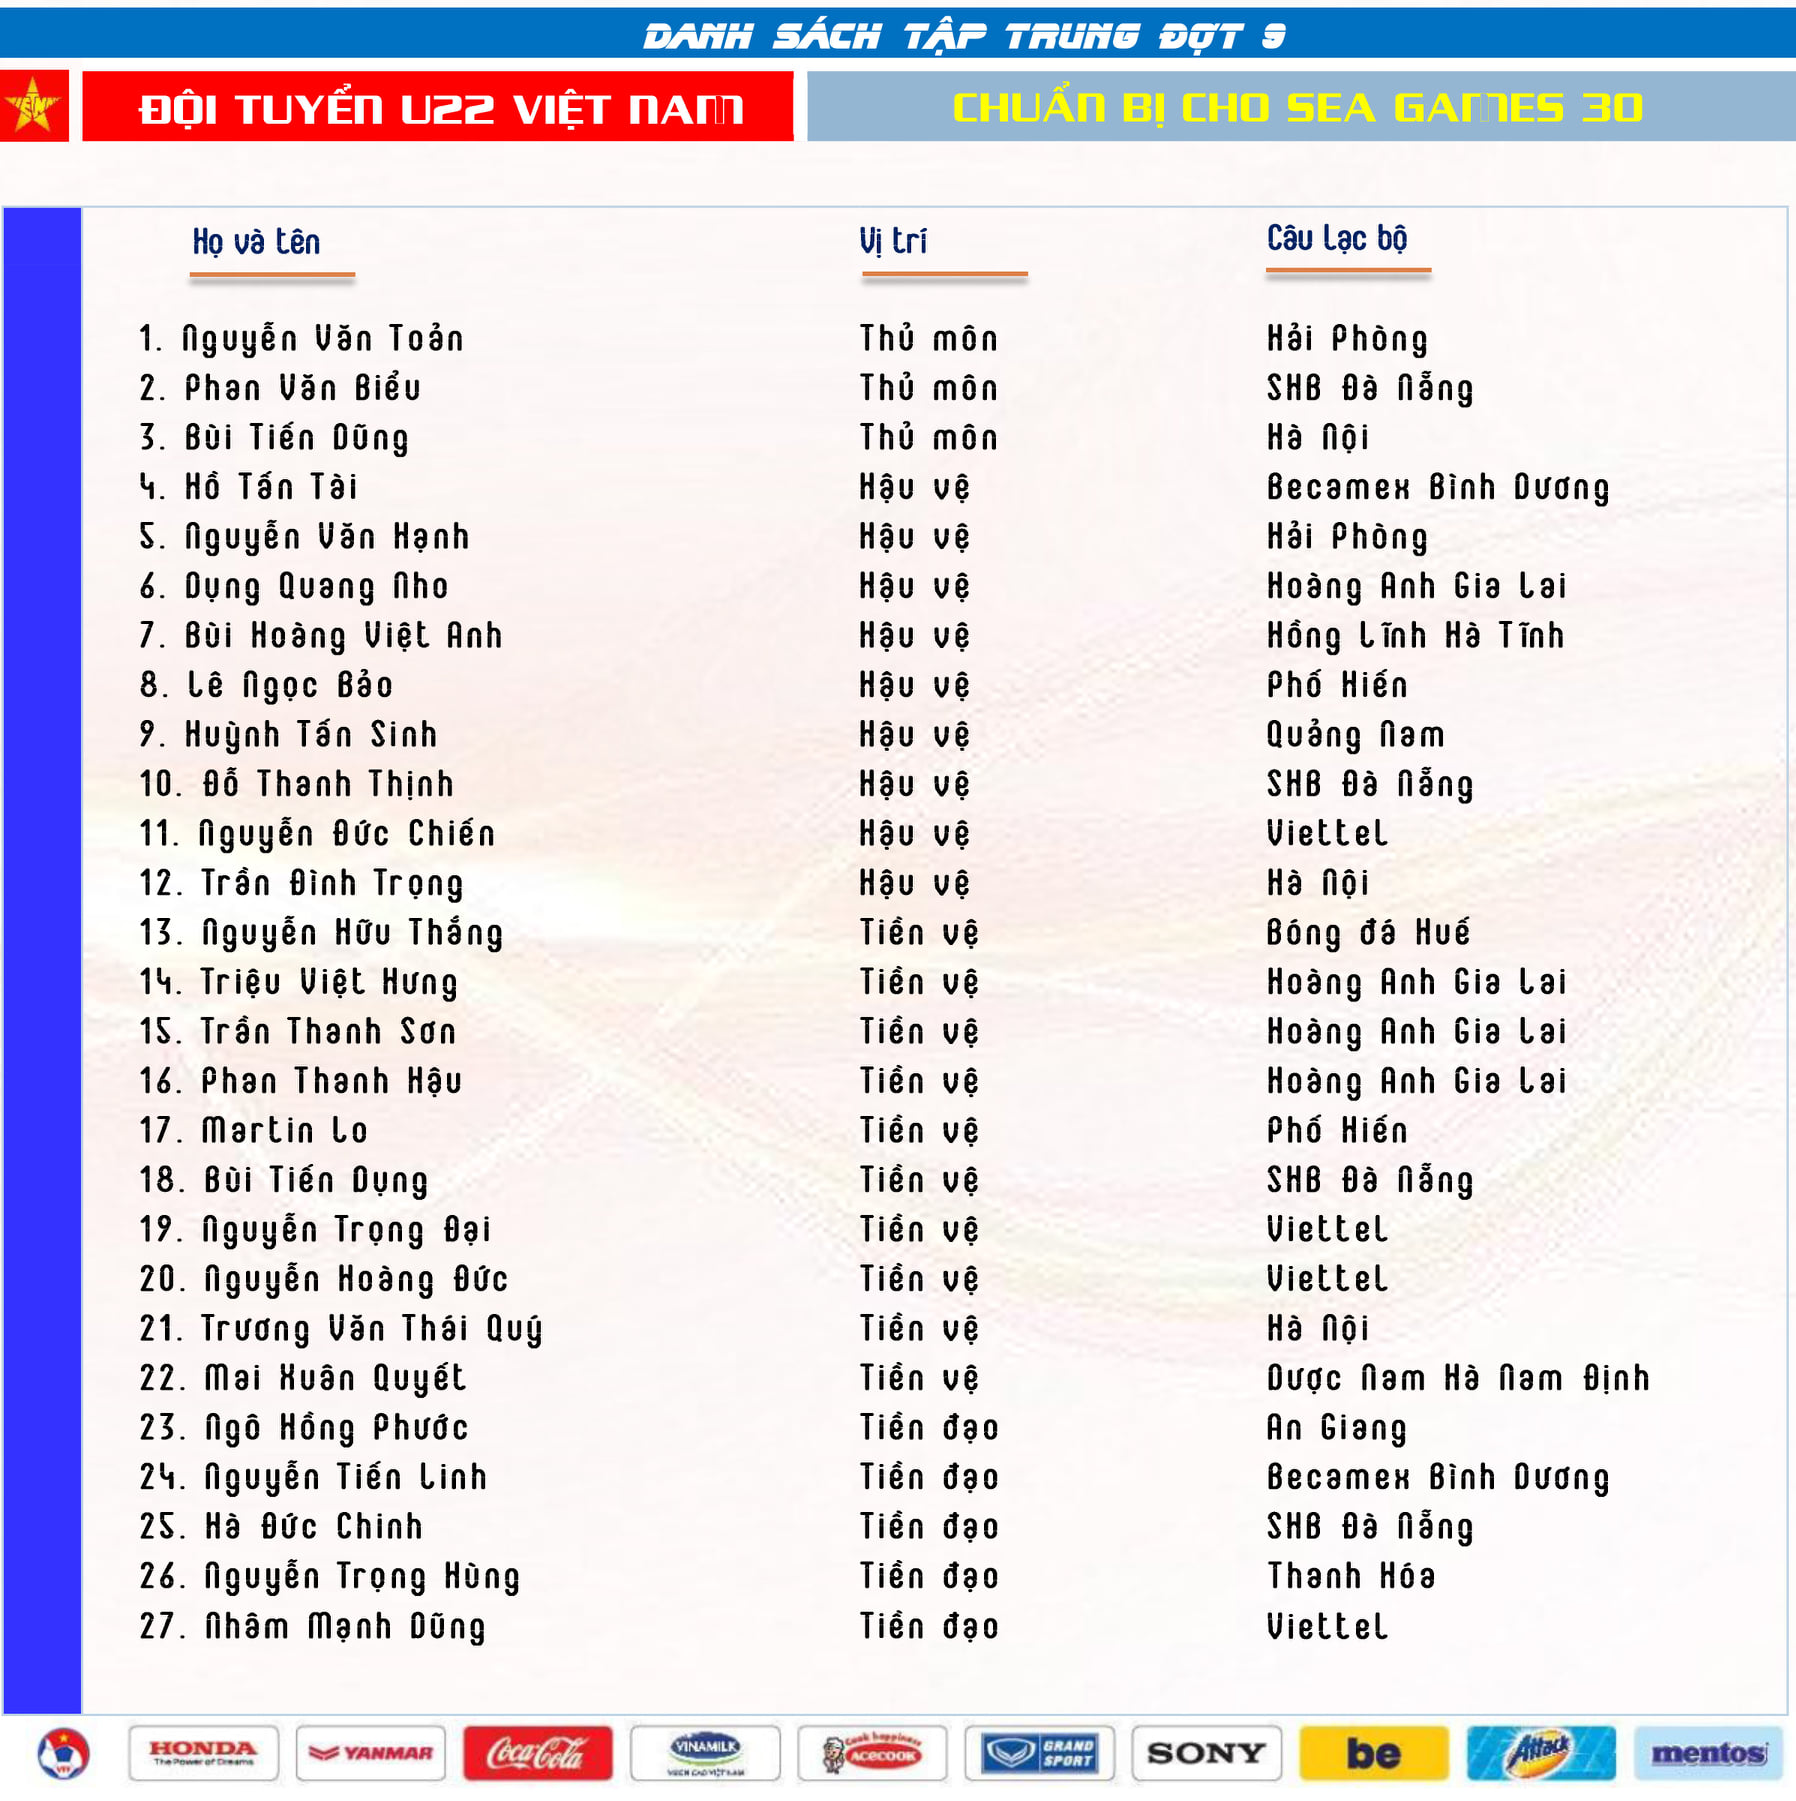 Danh sach tap trung 27 cau thu U22 Viet Nam chuan bi cho SEA Games